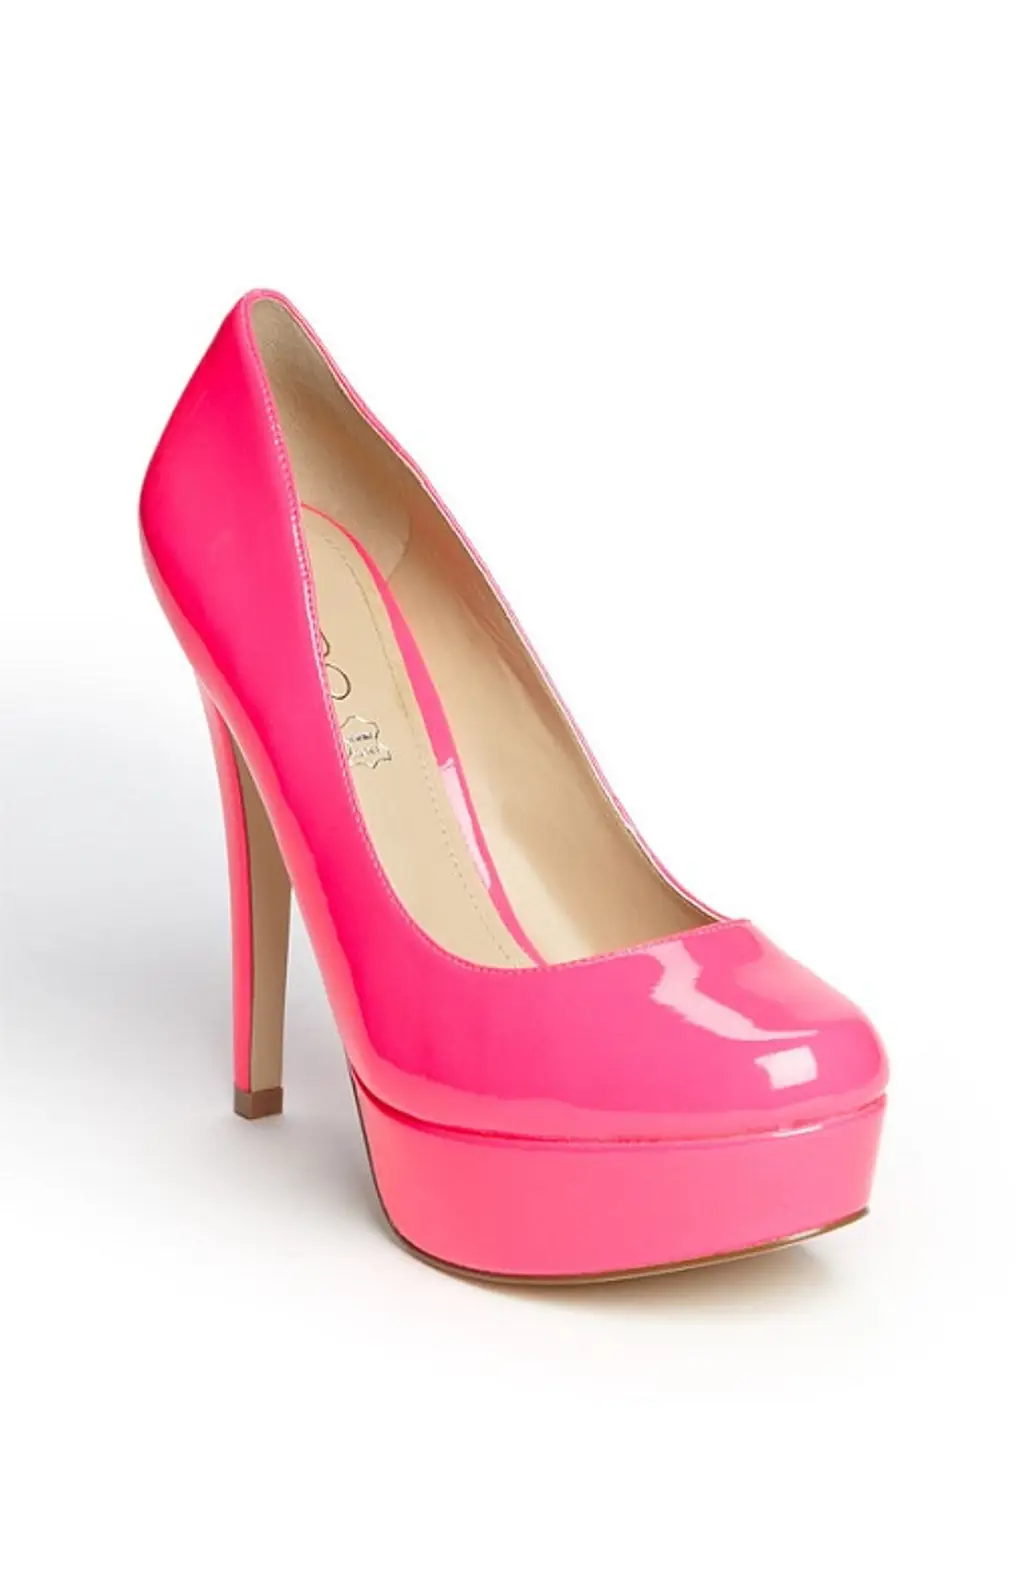 Neon Wedding Shoes...